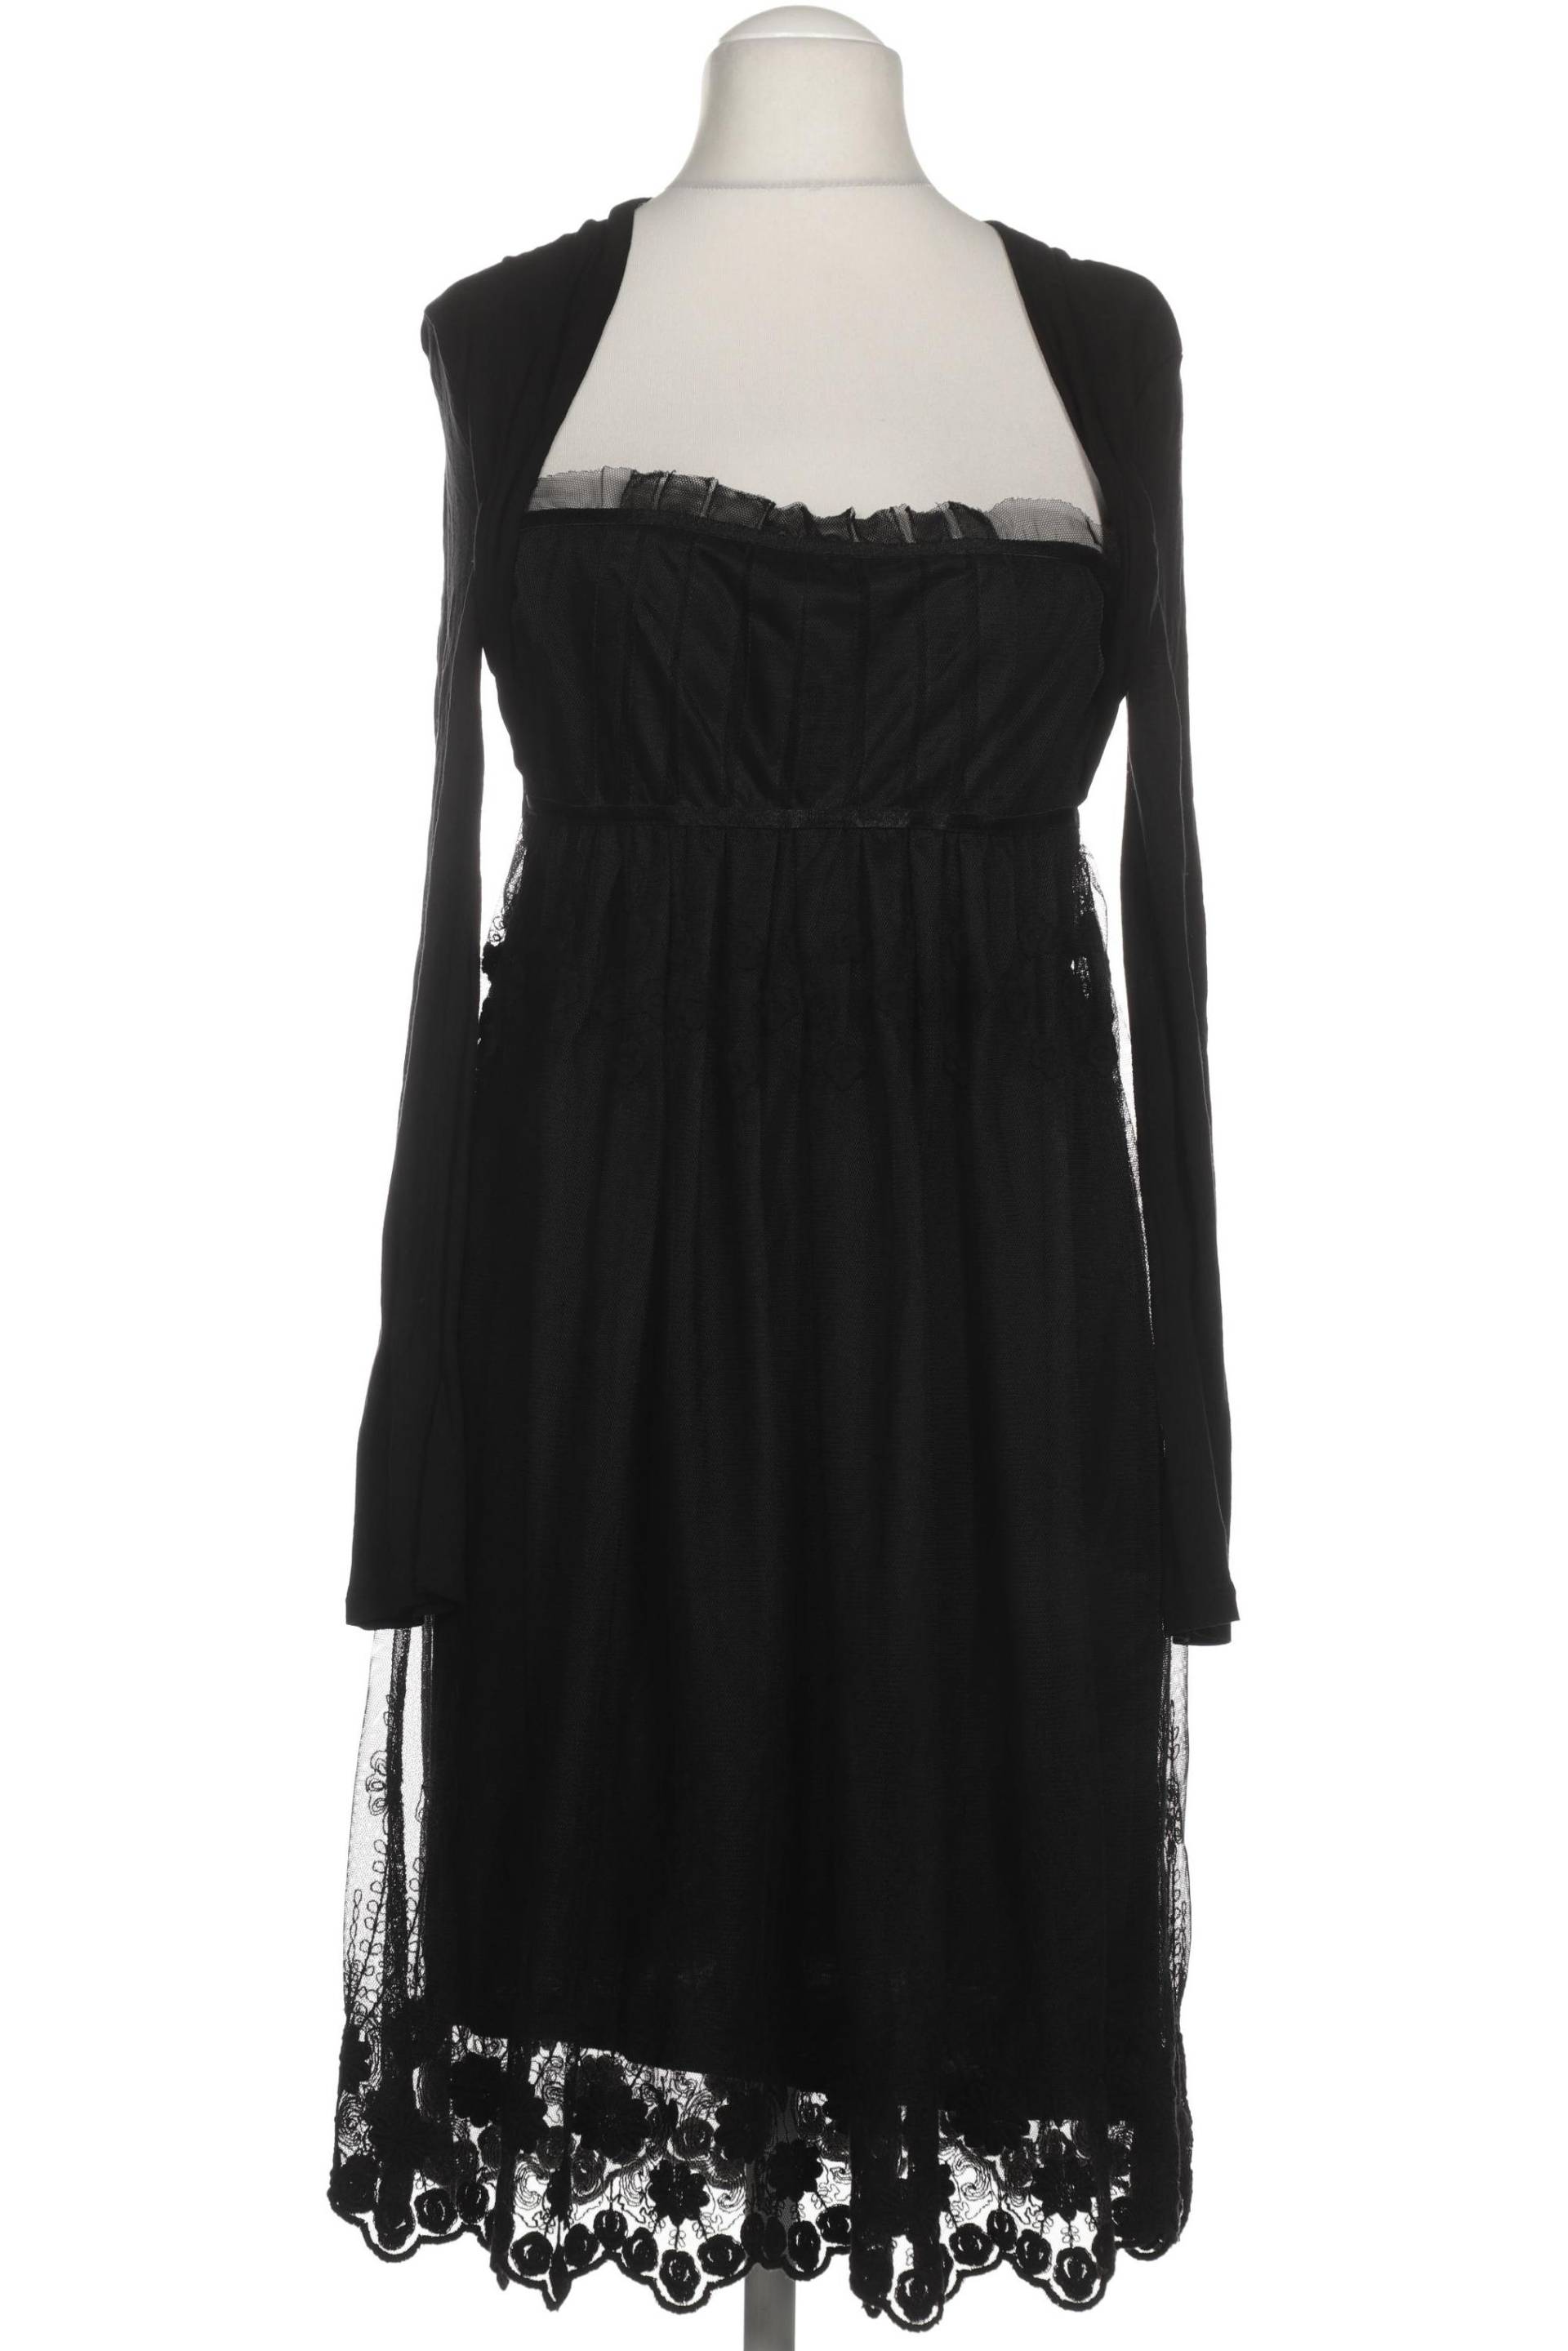 Promod Damen Kleid, schwarz von Promod